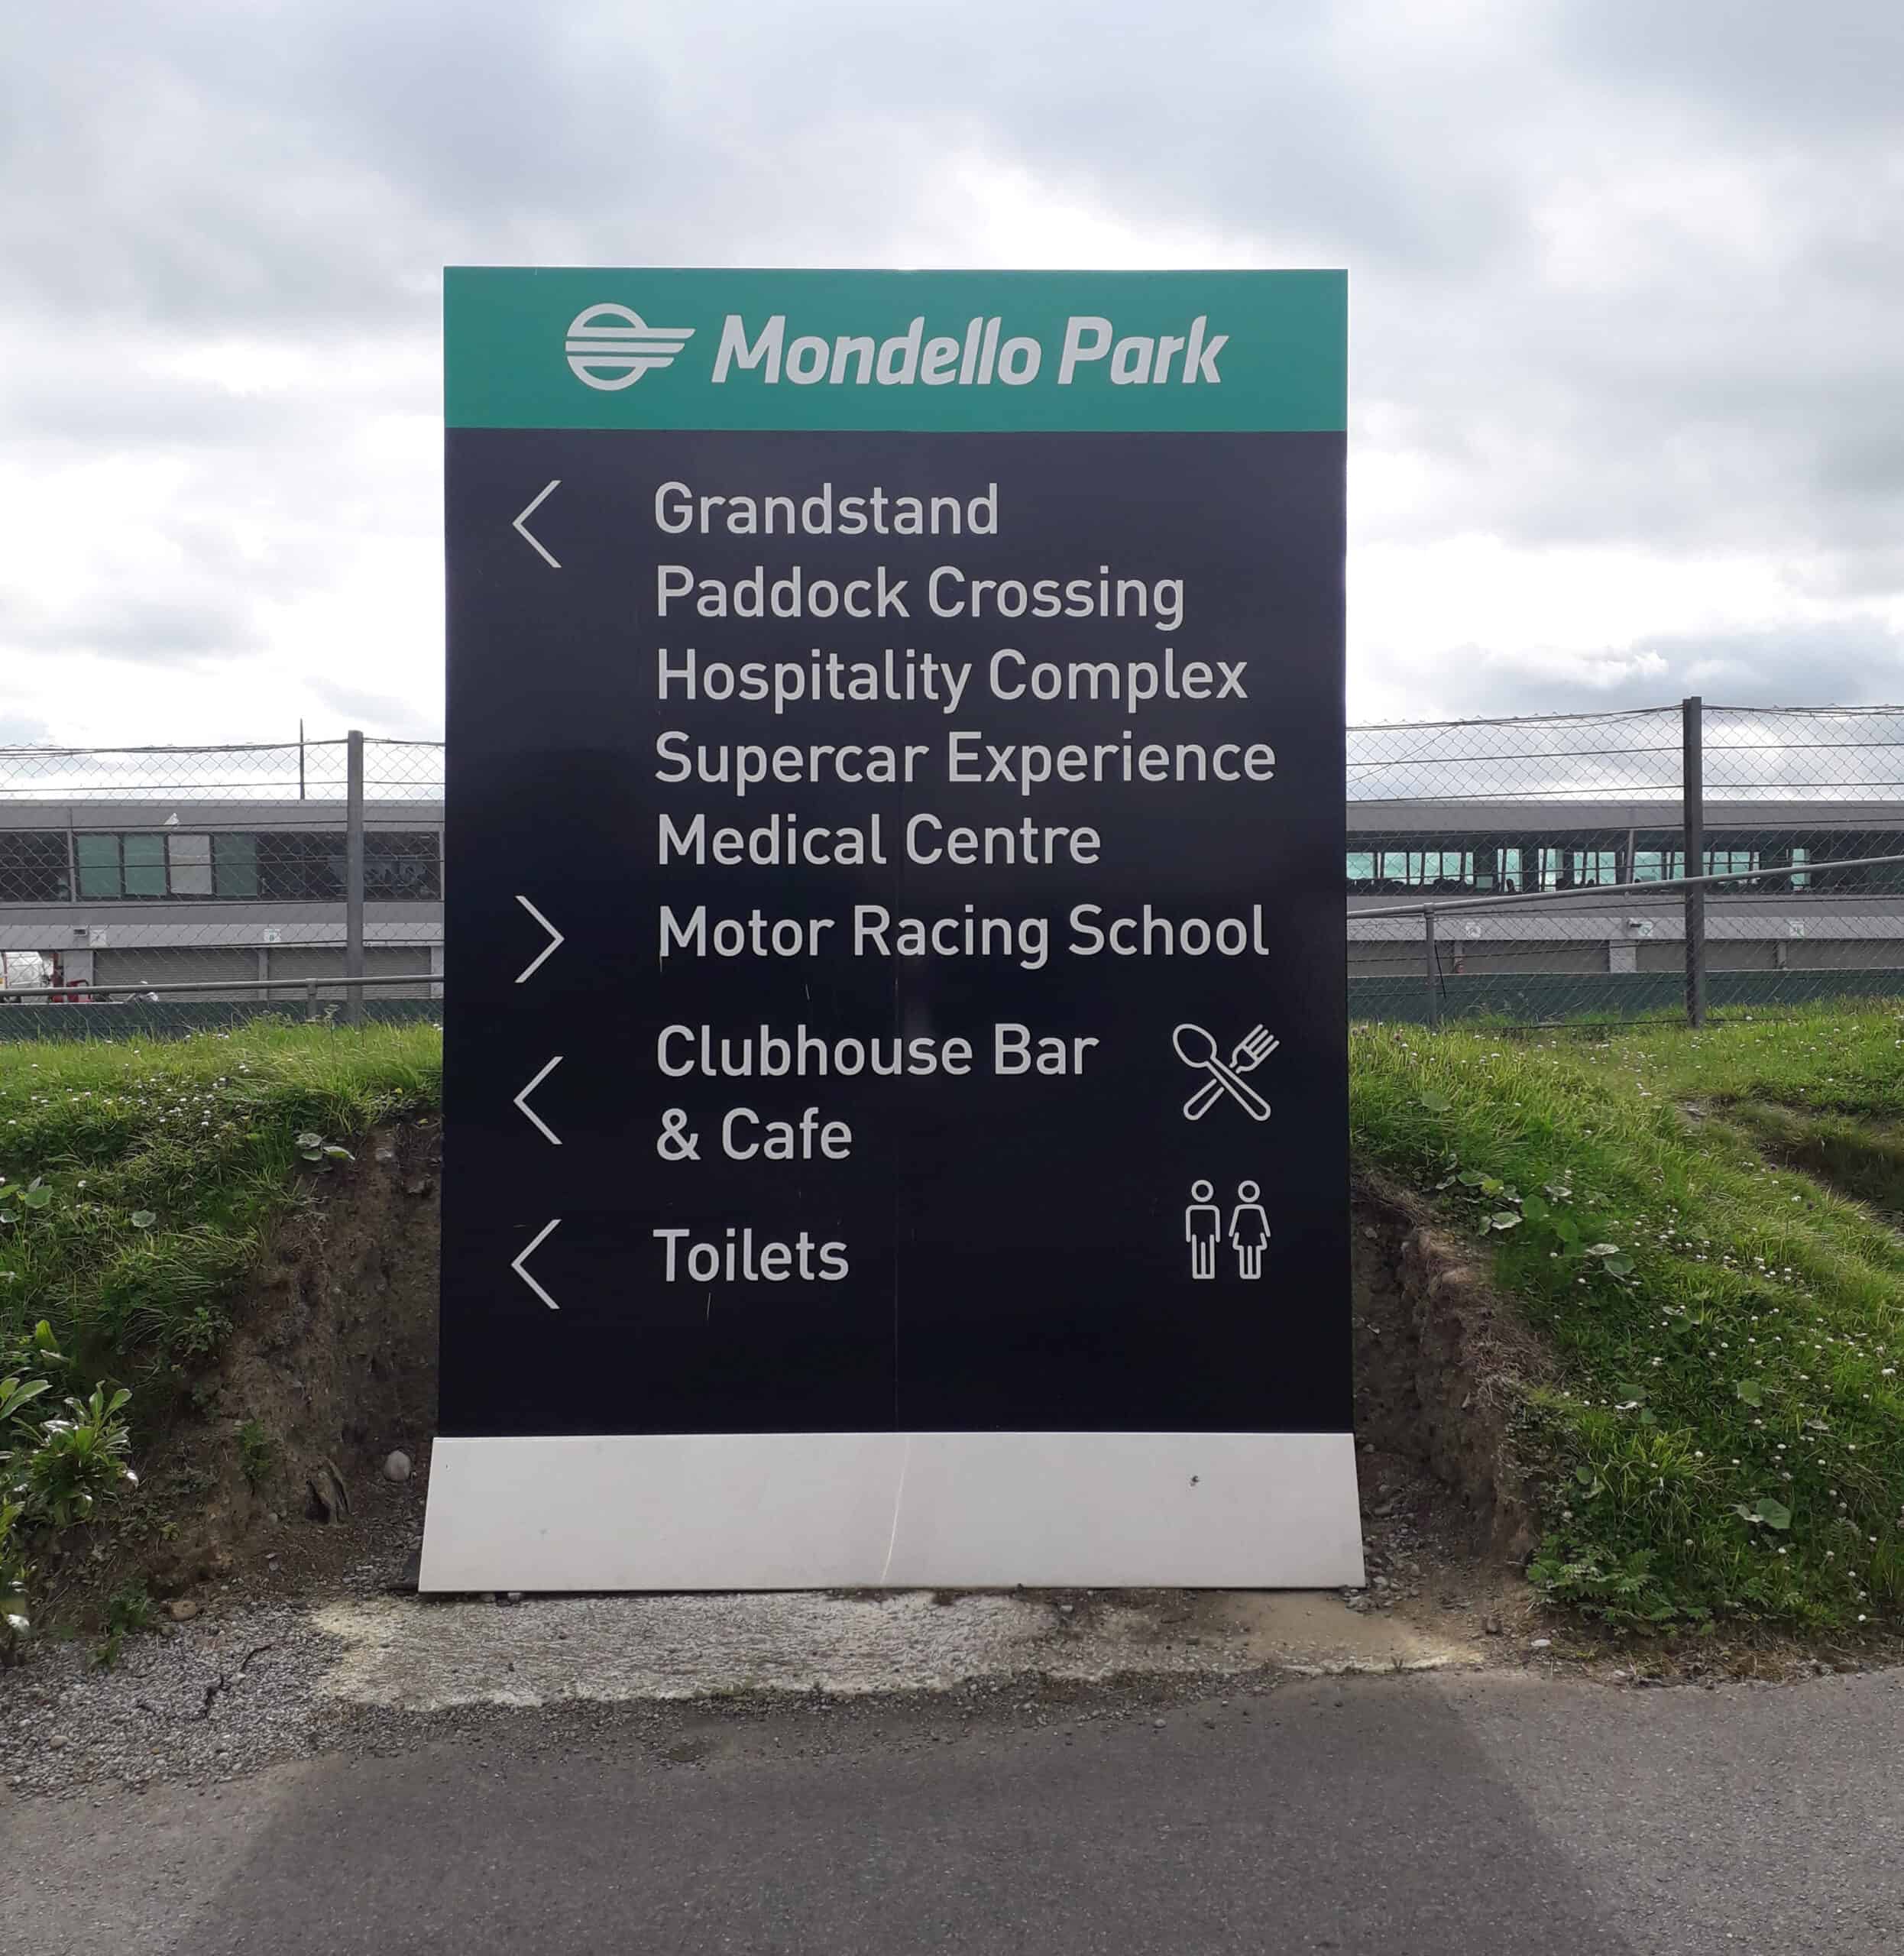 Plan Your Visit Mondello Park